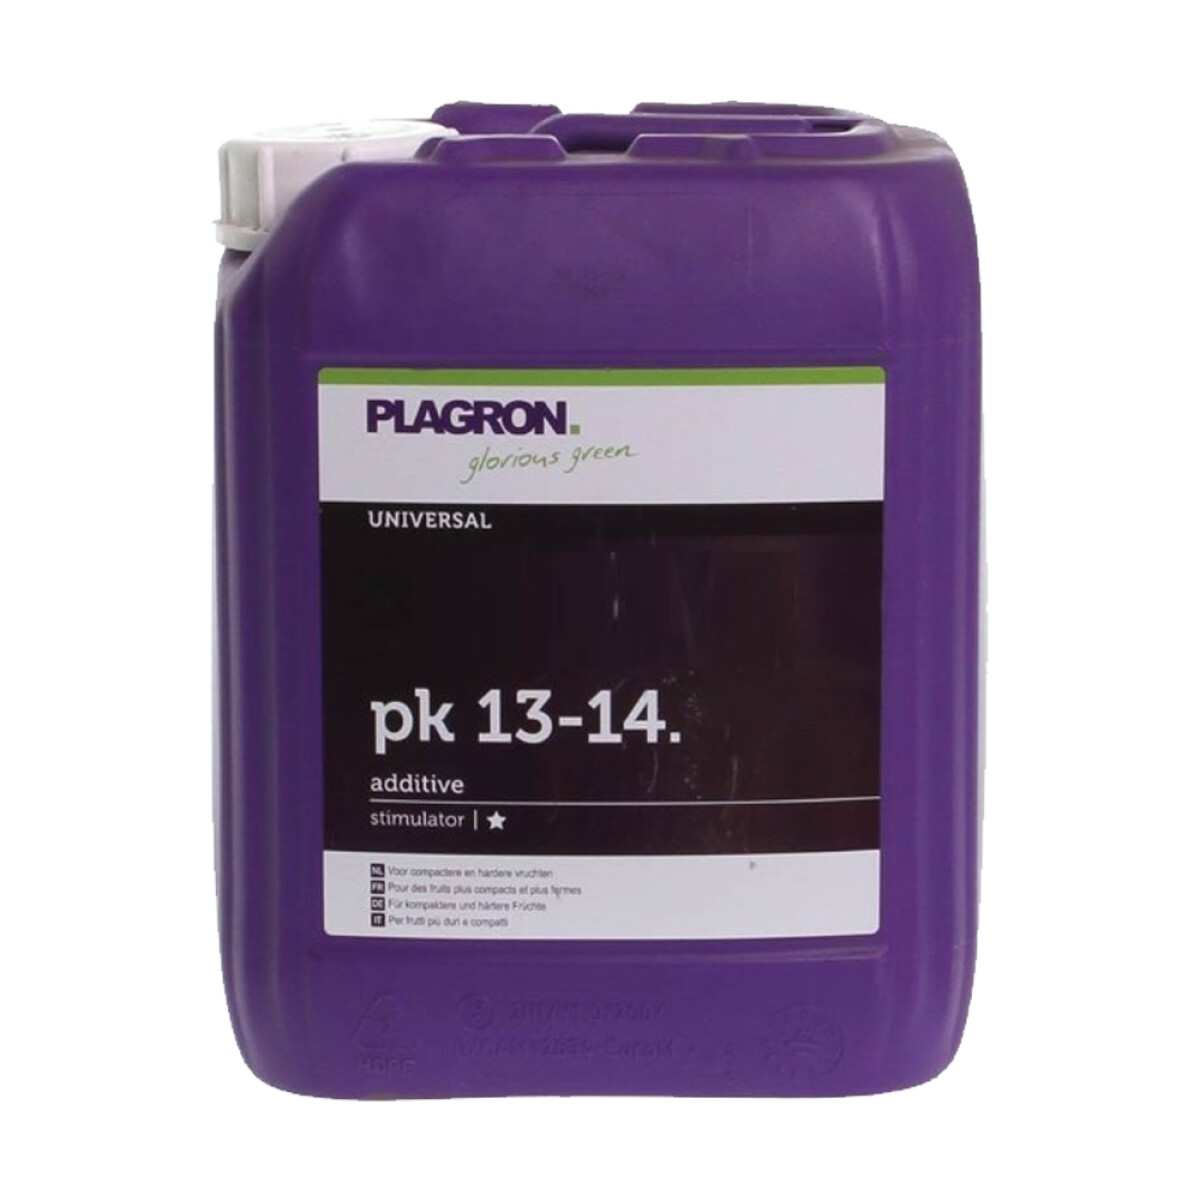 PK 13-14 PLAGRON - 10L 